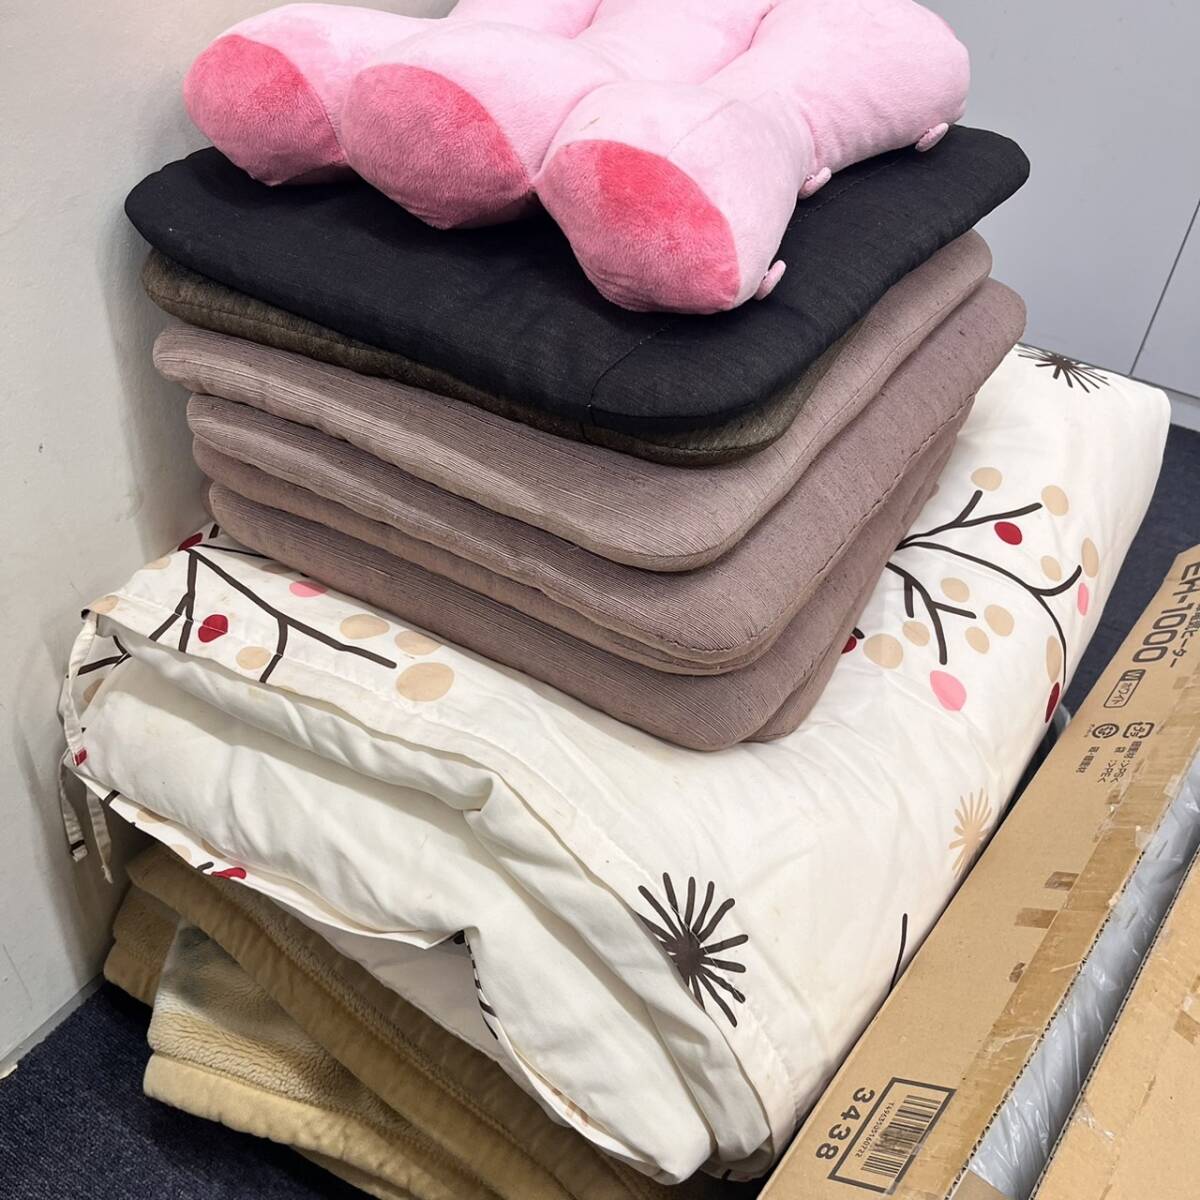 [C-22464] комплект продажа бытовая техника futon подушка для сидения подушка futon ...EH-1000 инфракрасные лучи электрический обогреватель электризация не проверка обычный использование б/у товар 